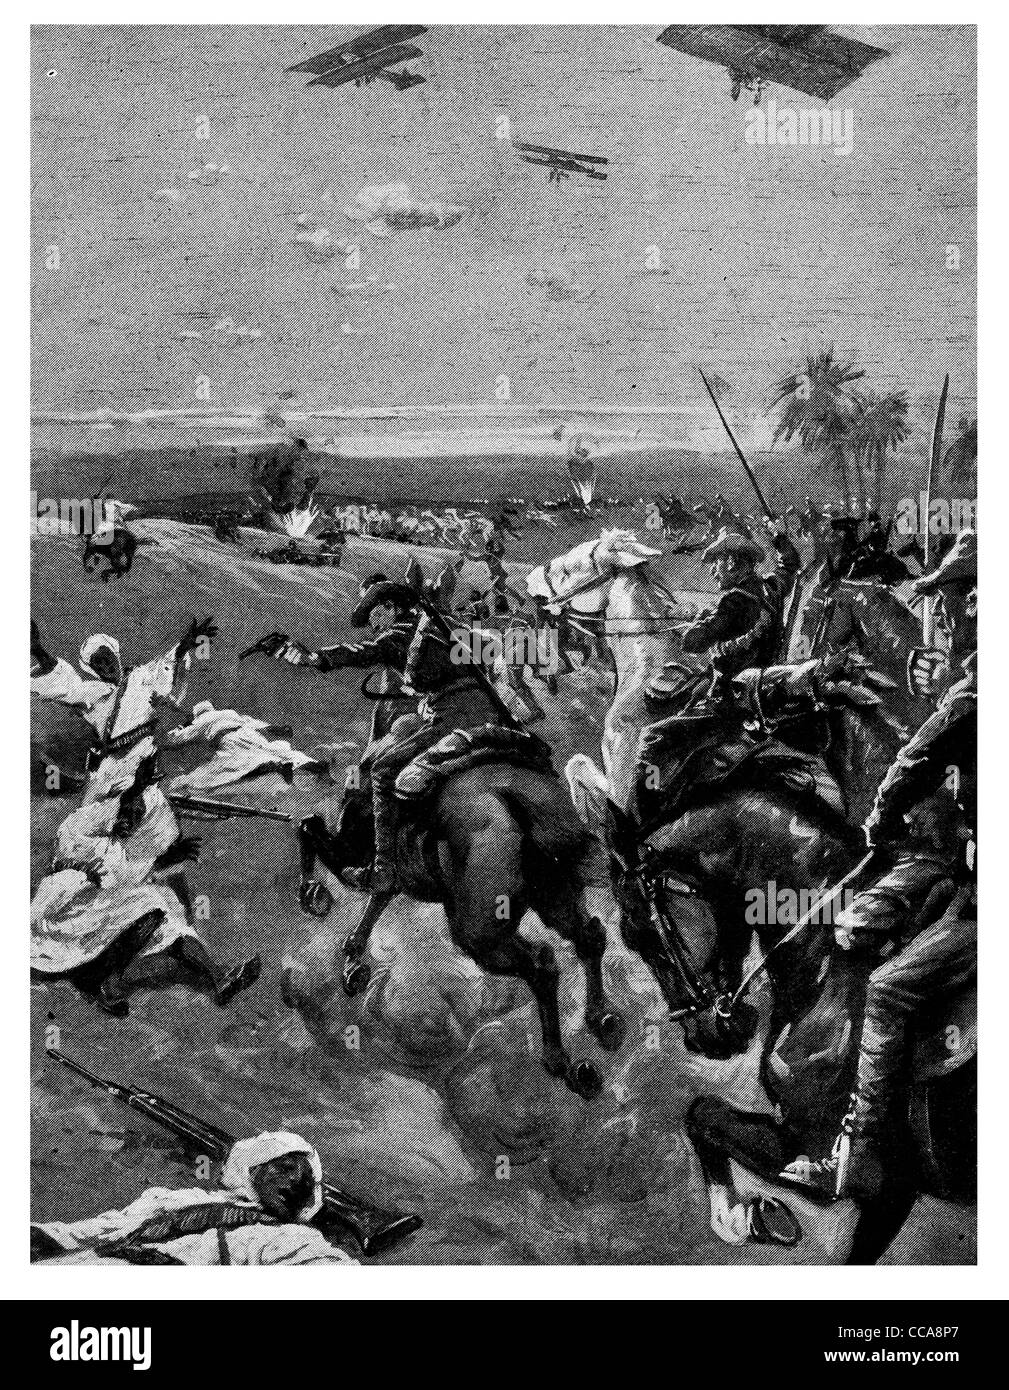 Anzac 1916 Nouvelle-Zélande troupes montées bombes épées ennemies scatter Égypte British airman lance épée sabre cheval égyptien du désert Banque D'Images